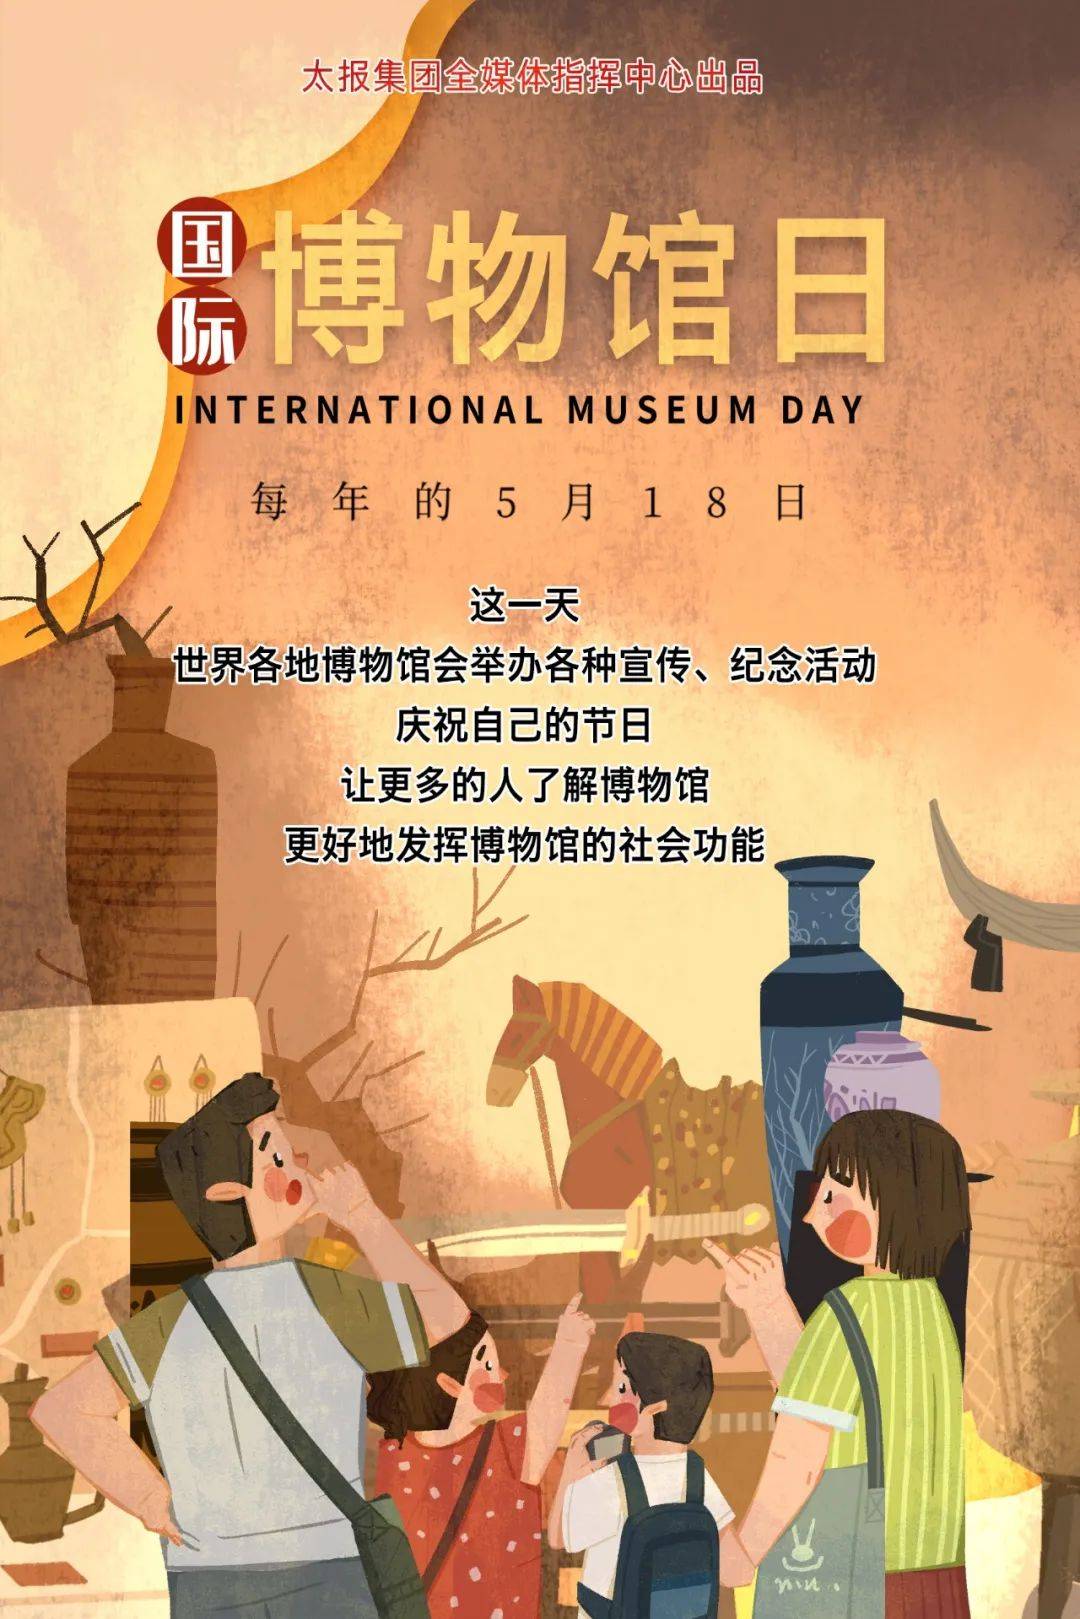 5月18日 | 国际博物馆日,太原这6个地方都有精彩活动!